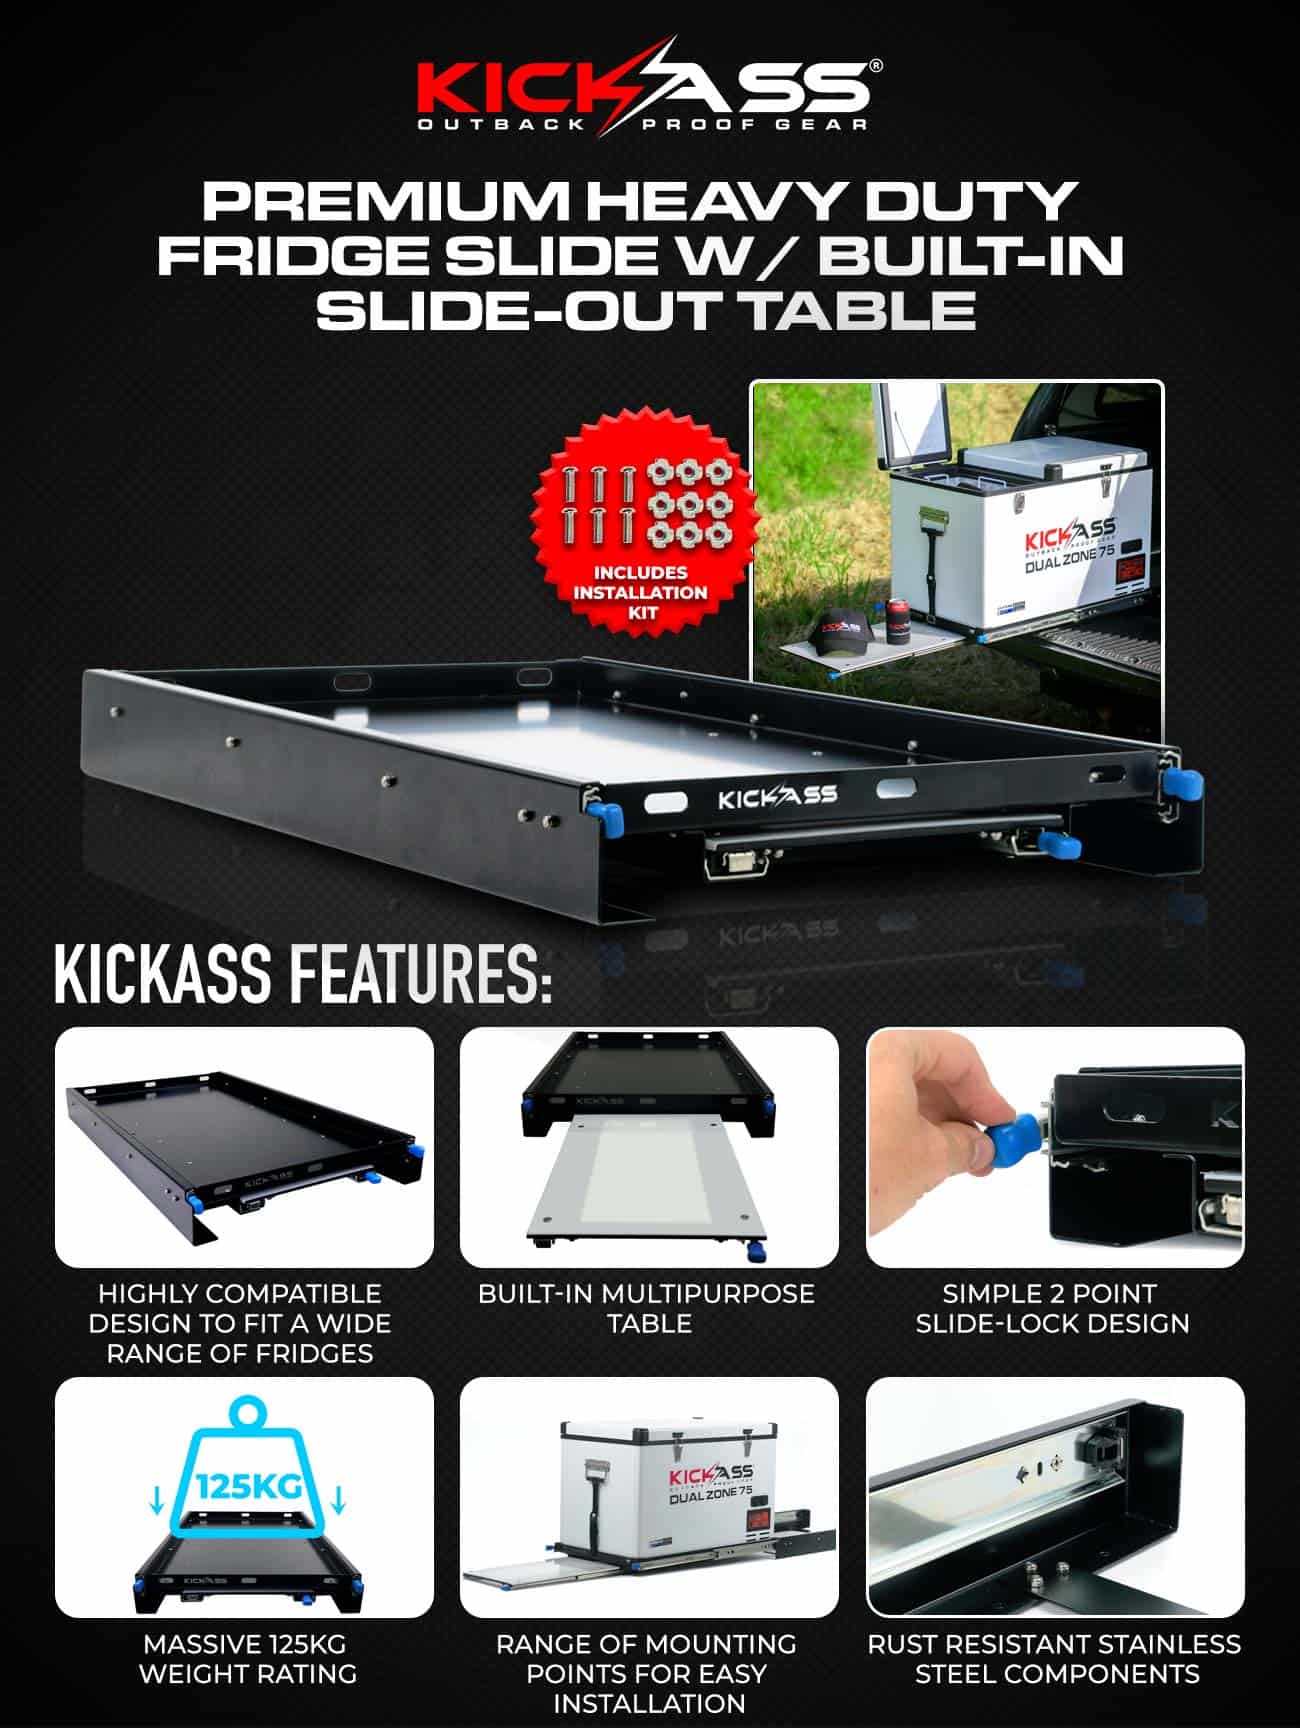 KASLIDEPR - KICKASS Premium Heavy Duty Fridge Slide - Built in Slide-out Table 